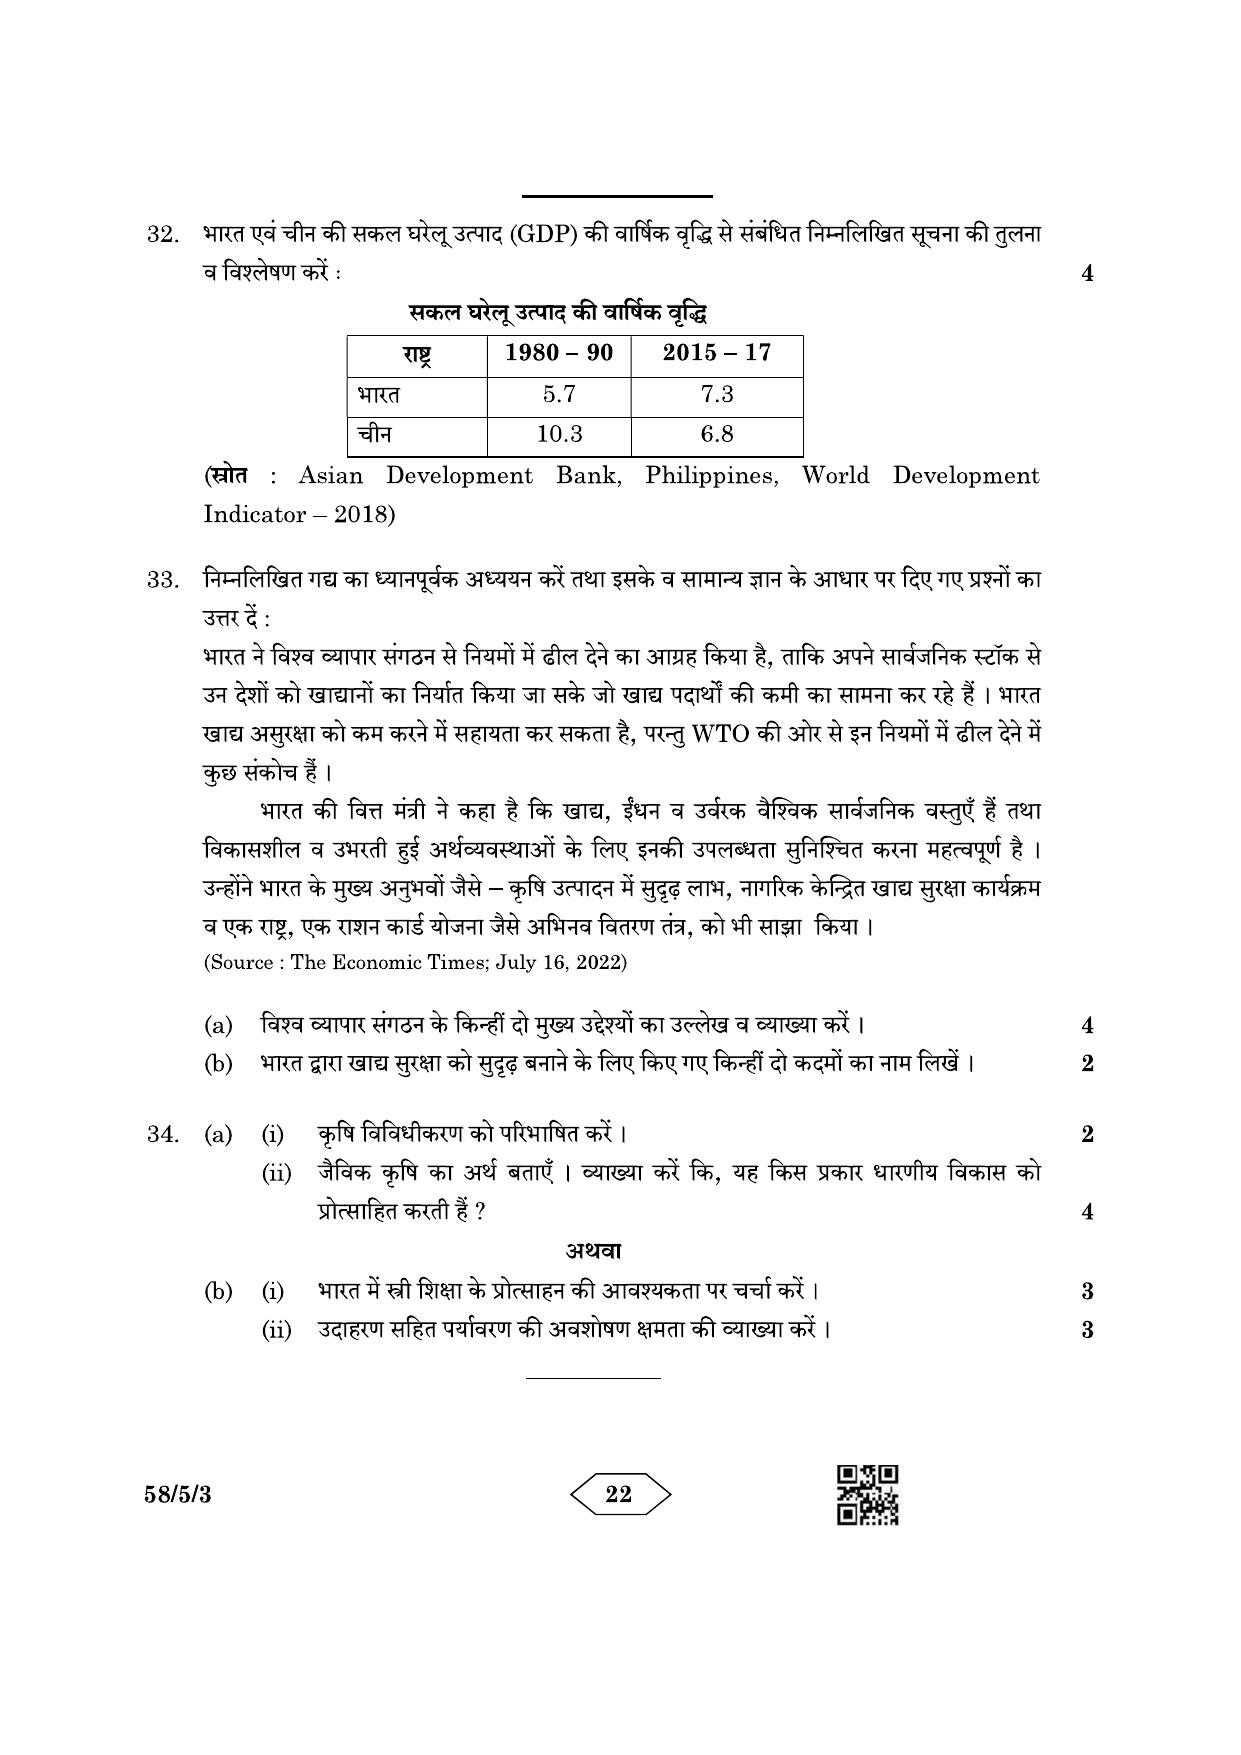 CBSE Class 12 58-5-3 Economics 2023 Question Paper - Page 22